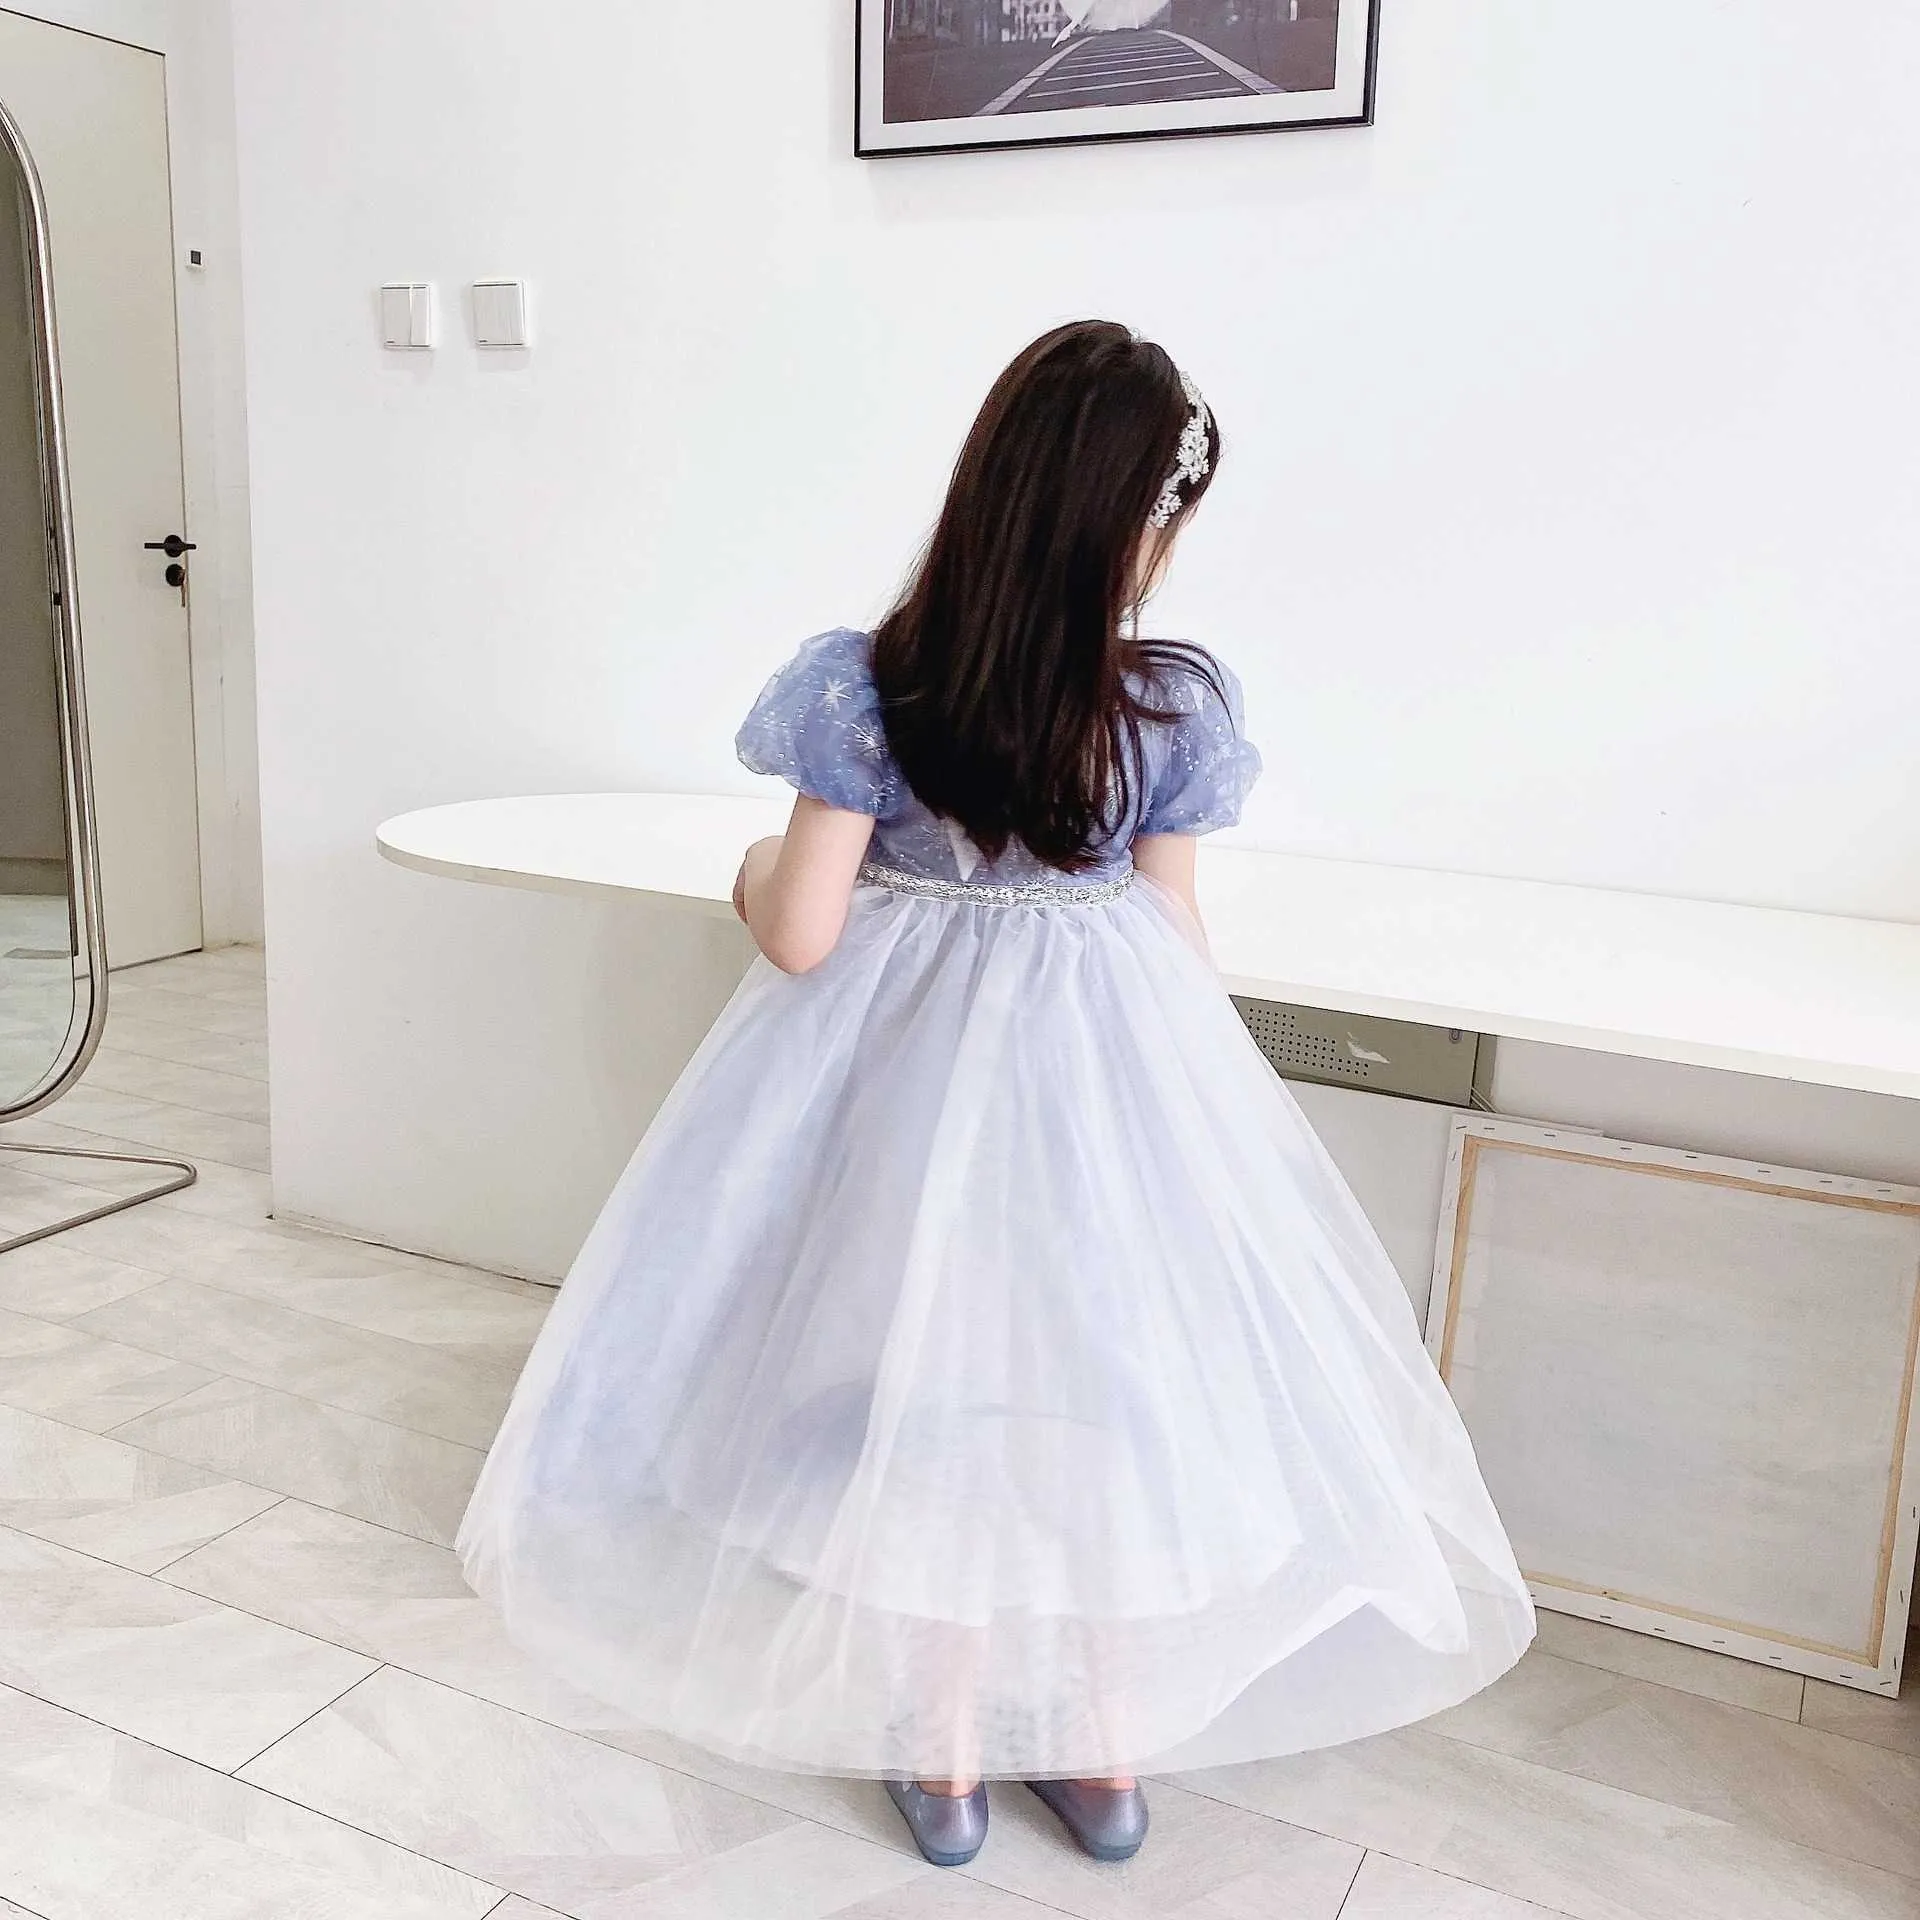 الأميرة الفتيات اللباس الثلج الجليد الأزرق تول مع الانحناء جميل الأطفال لوليتا حزب ثوب cltohing 210529